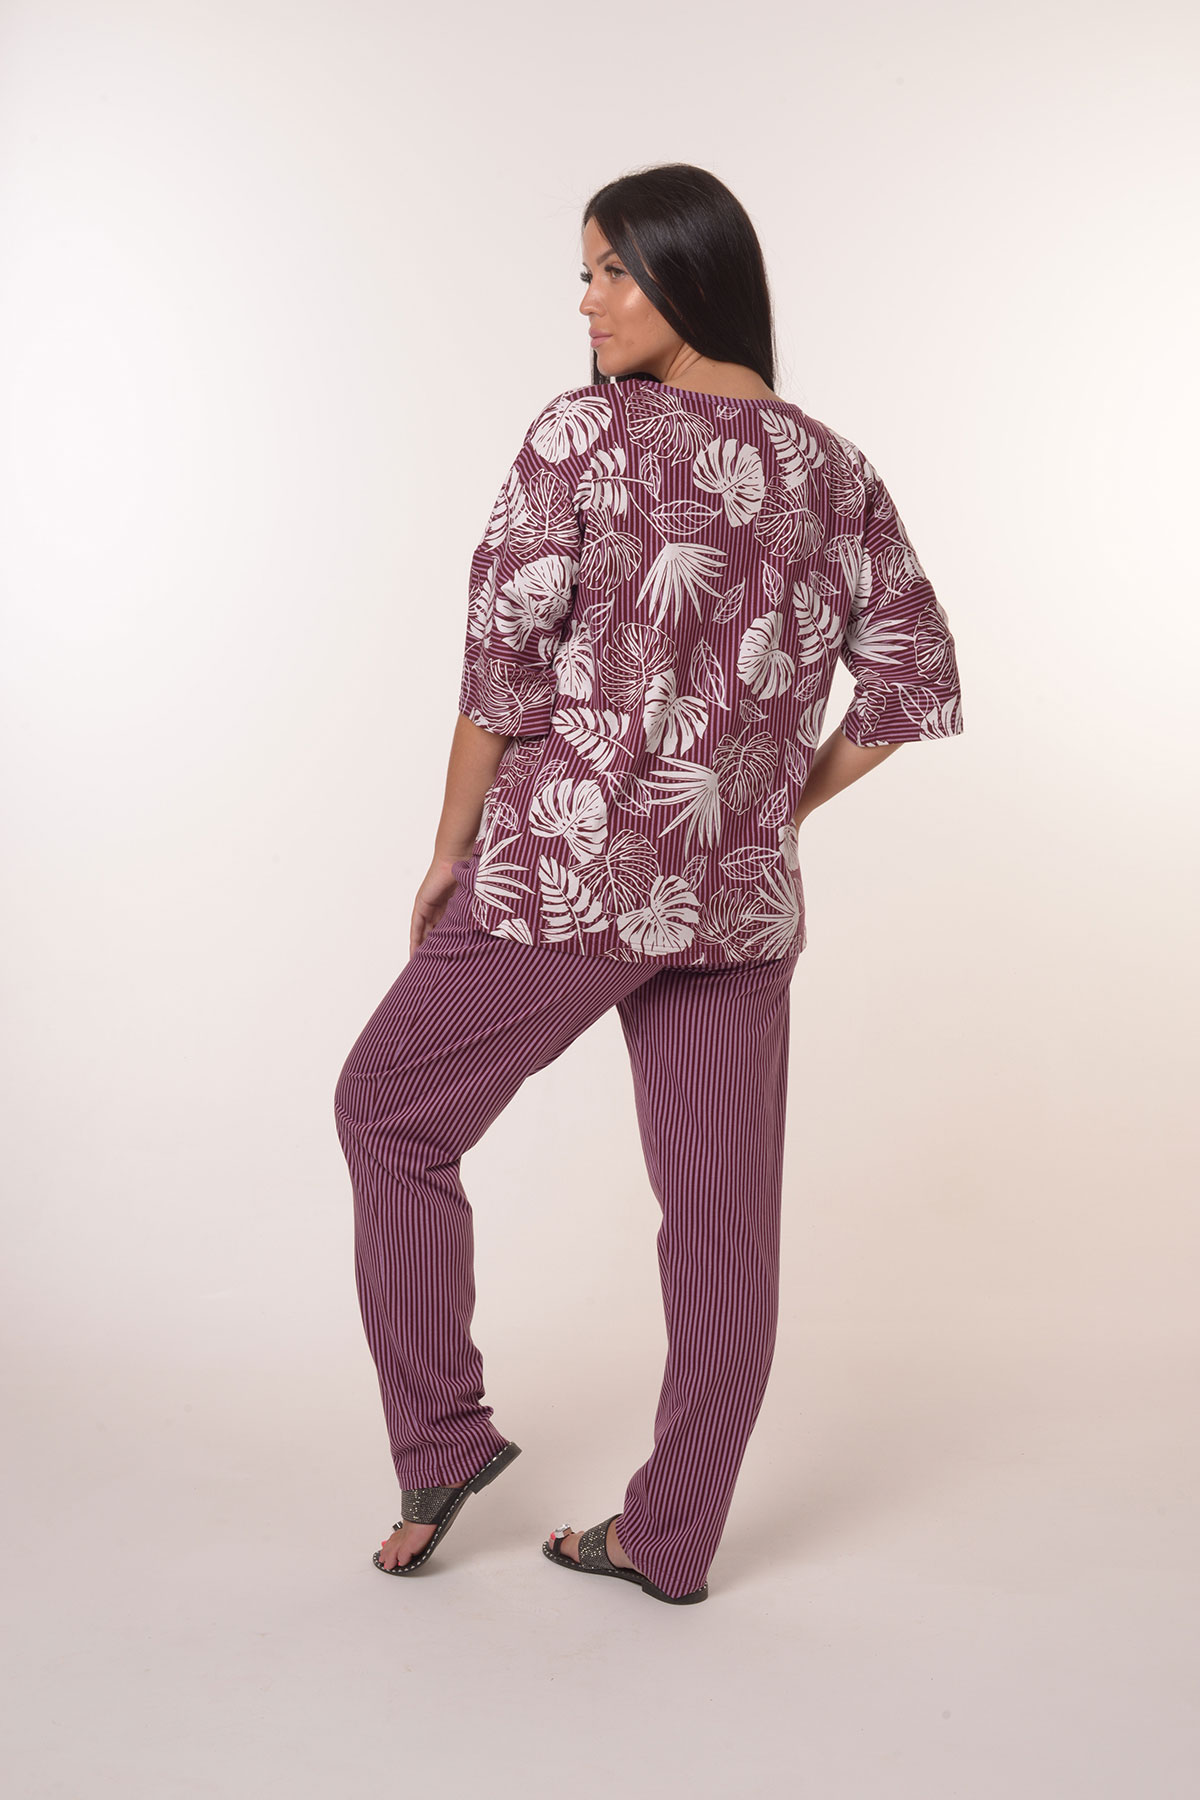 Жен. костюм повседневный арт. 23-0390 Фиолетовый р. 62 Моделлини, размер 62 - фото 4